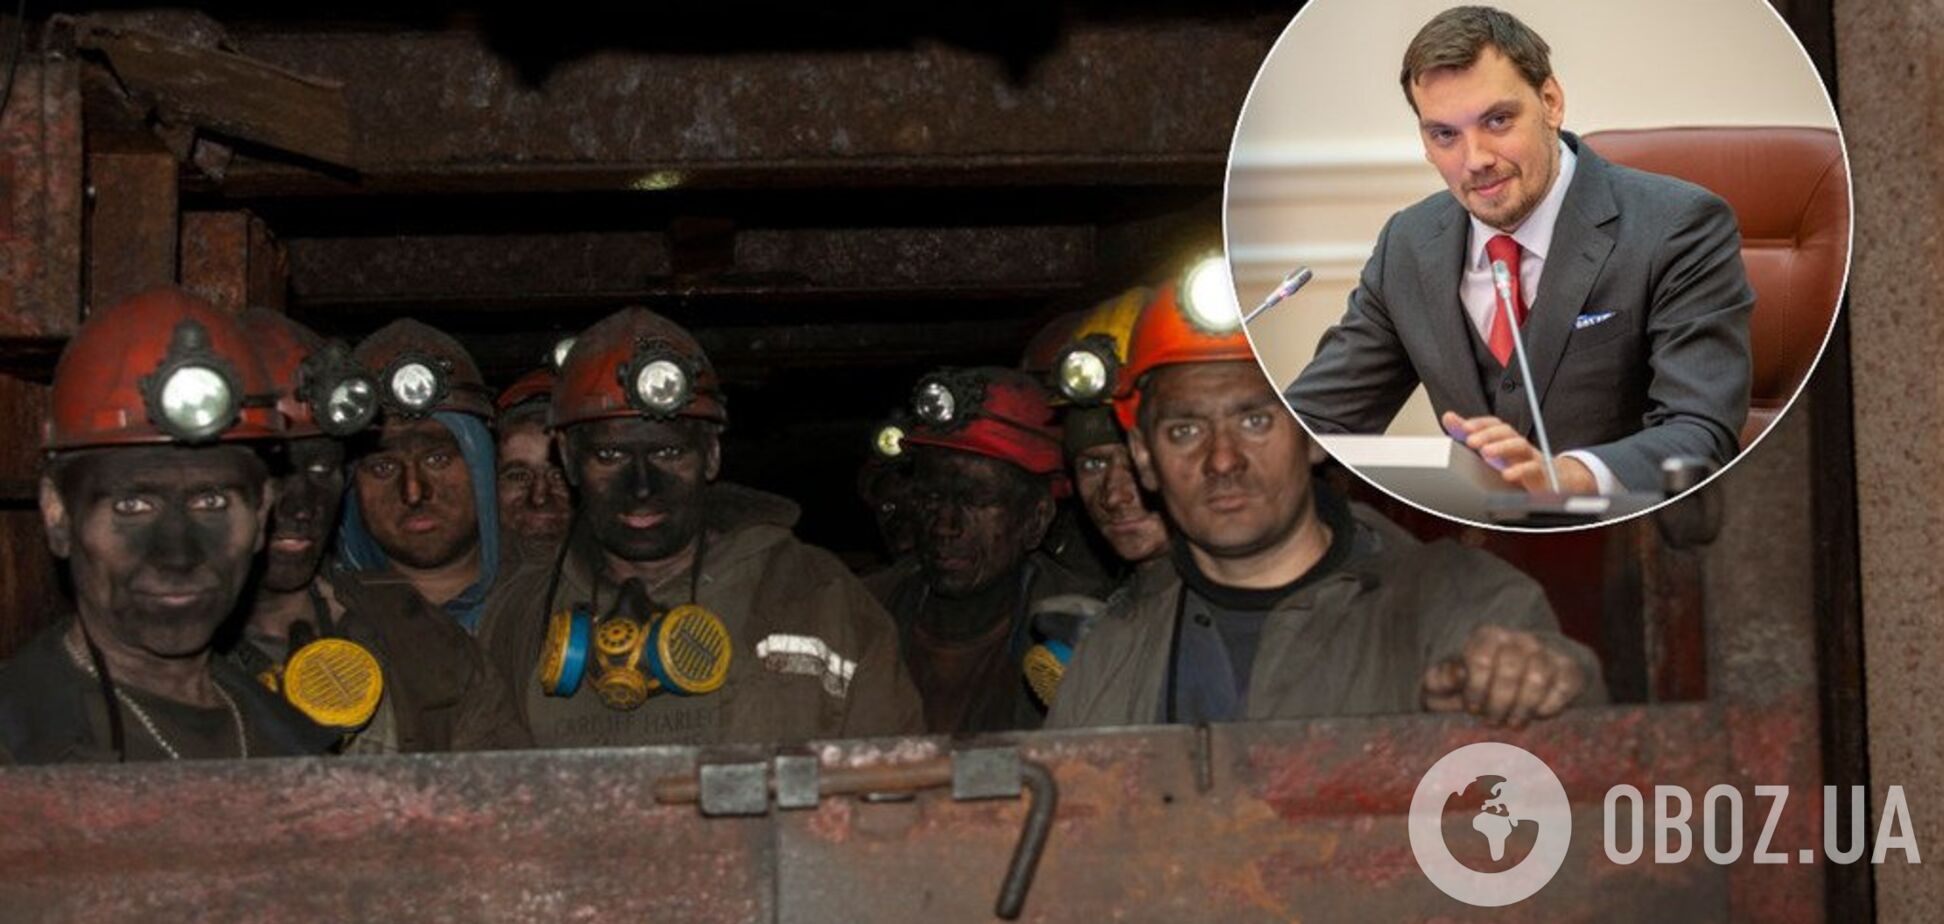 '1 млрд не хватит': у Гончарука признали колоссальные проблемы с зарплатами шахтерам